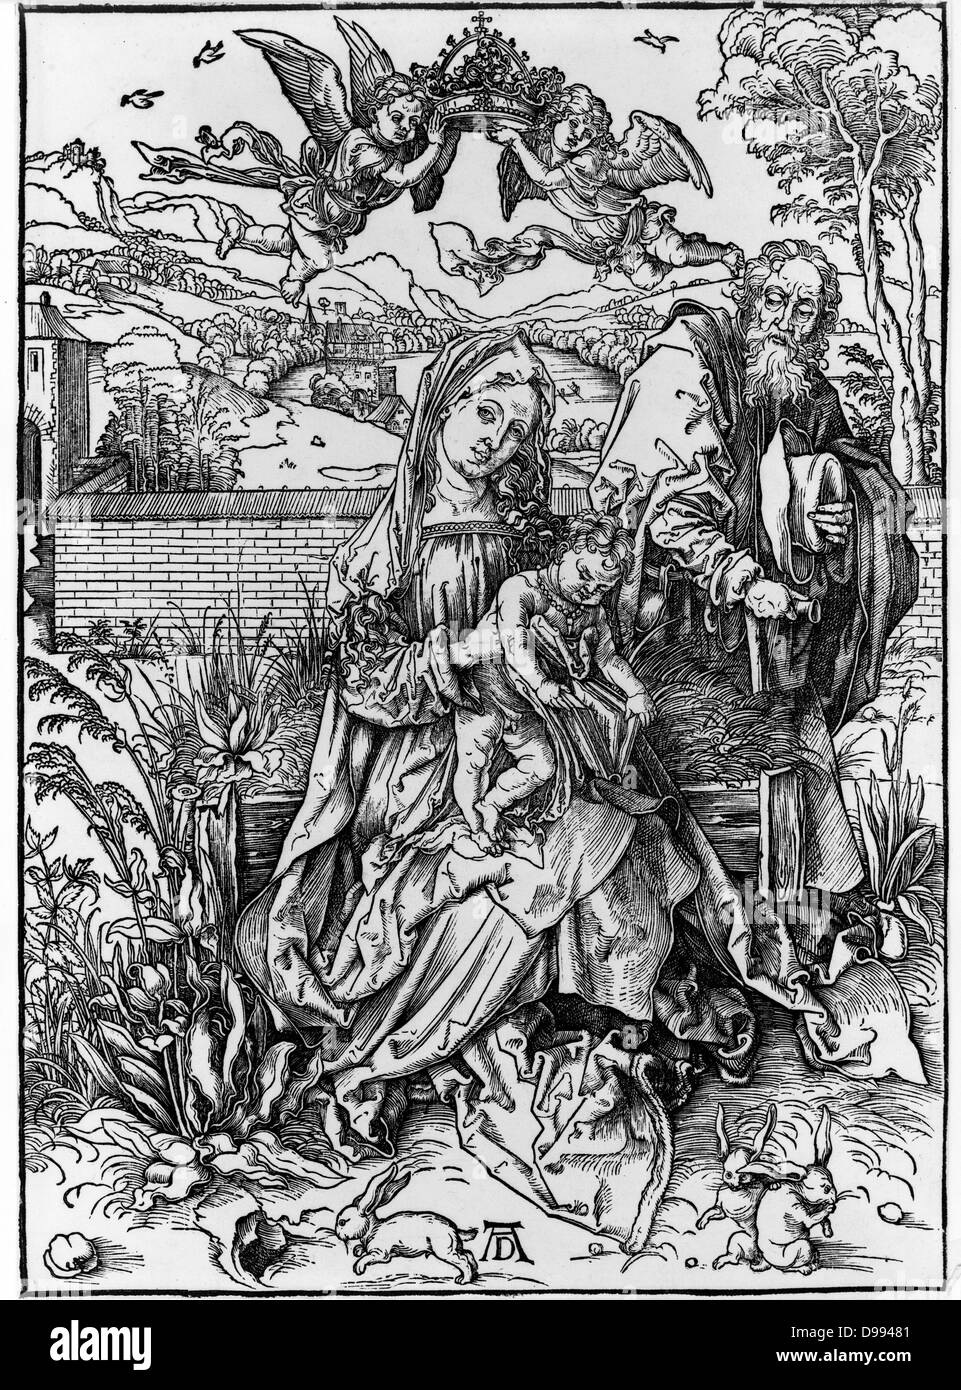 La Vergine con il bambino in possesso di un libro, di Albrecht Dürer, 1471-1528 artista tedesco. Pubblicato ca. 1498 Foto Stock